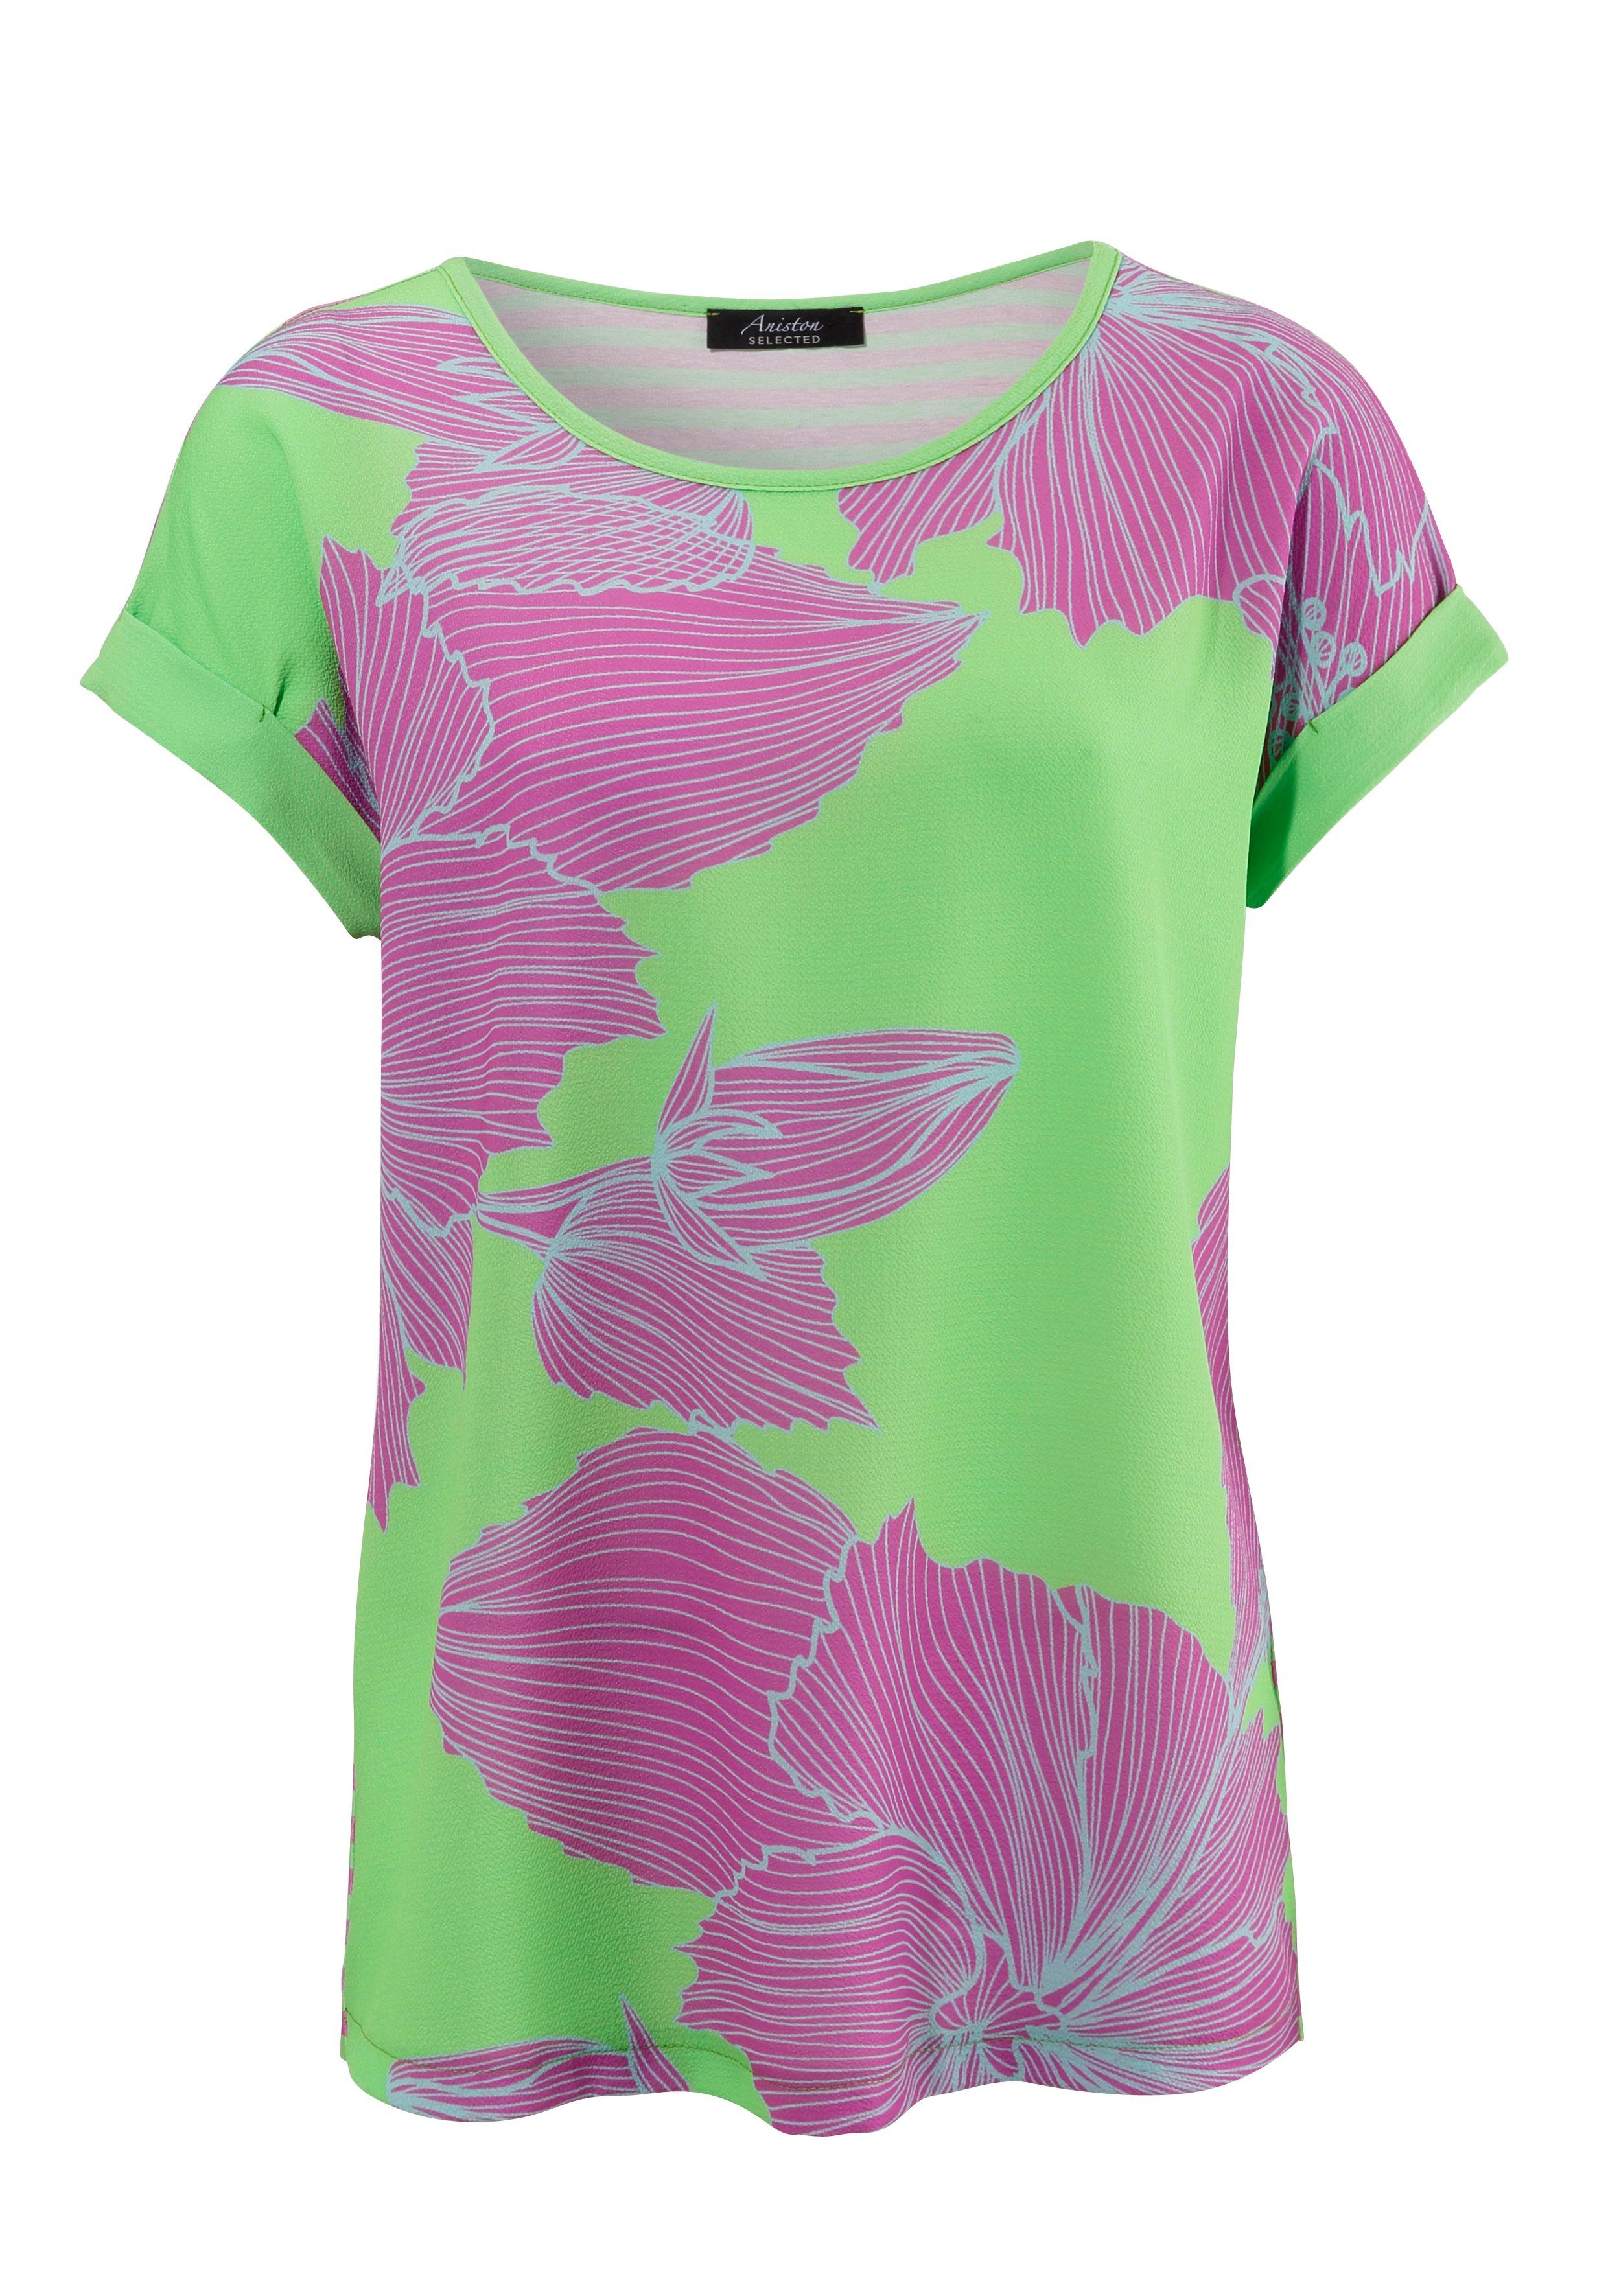 Aniston SELECTED Blusenshirt vorne mit hinten Blütendruck, Streifen mit grün-lila-hellblau